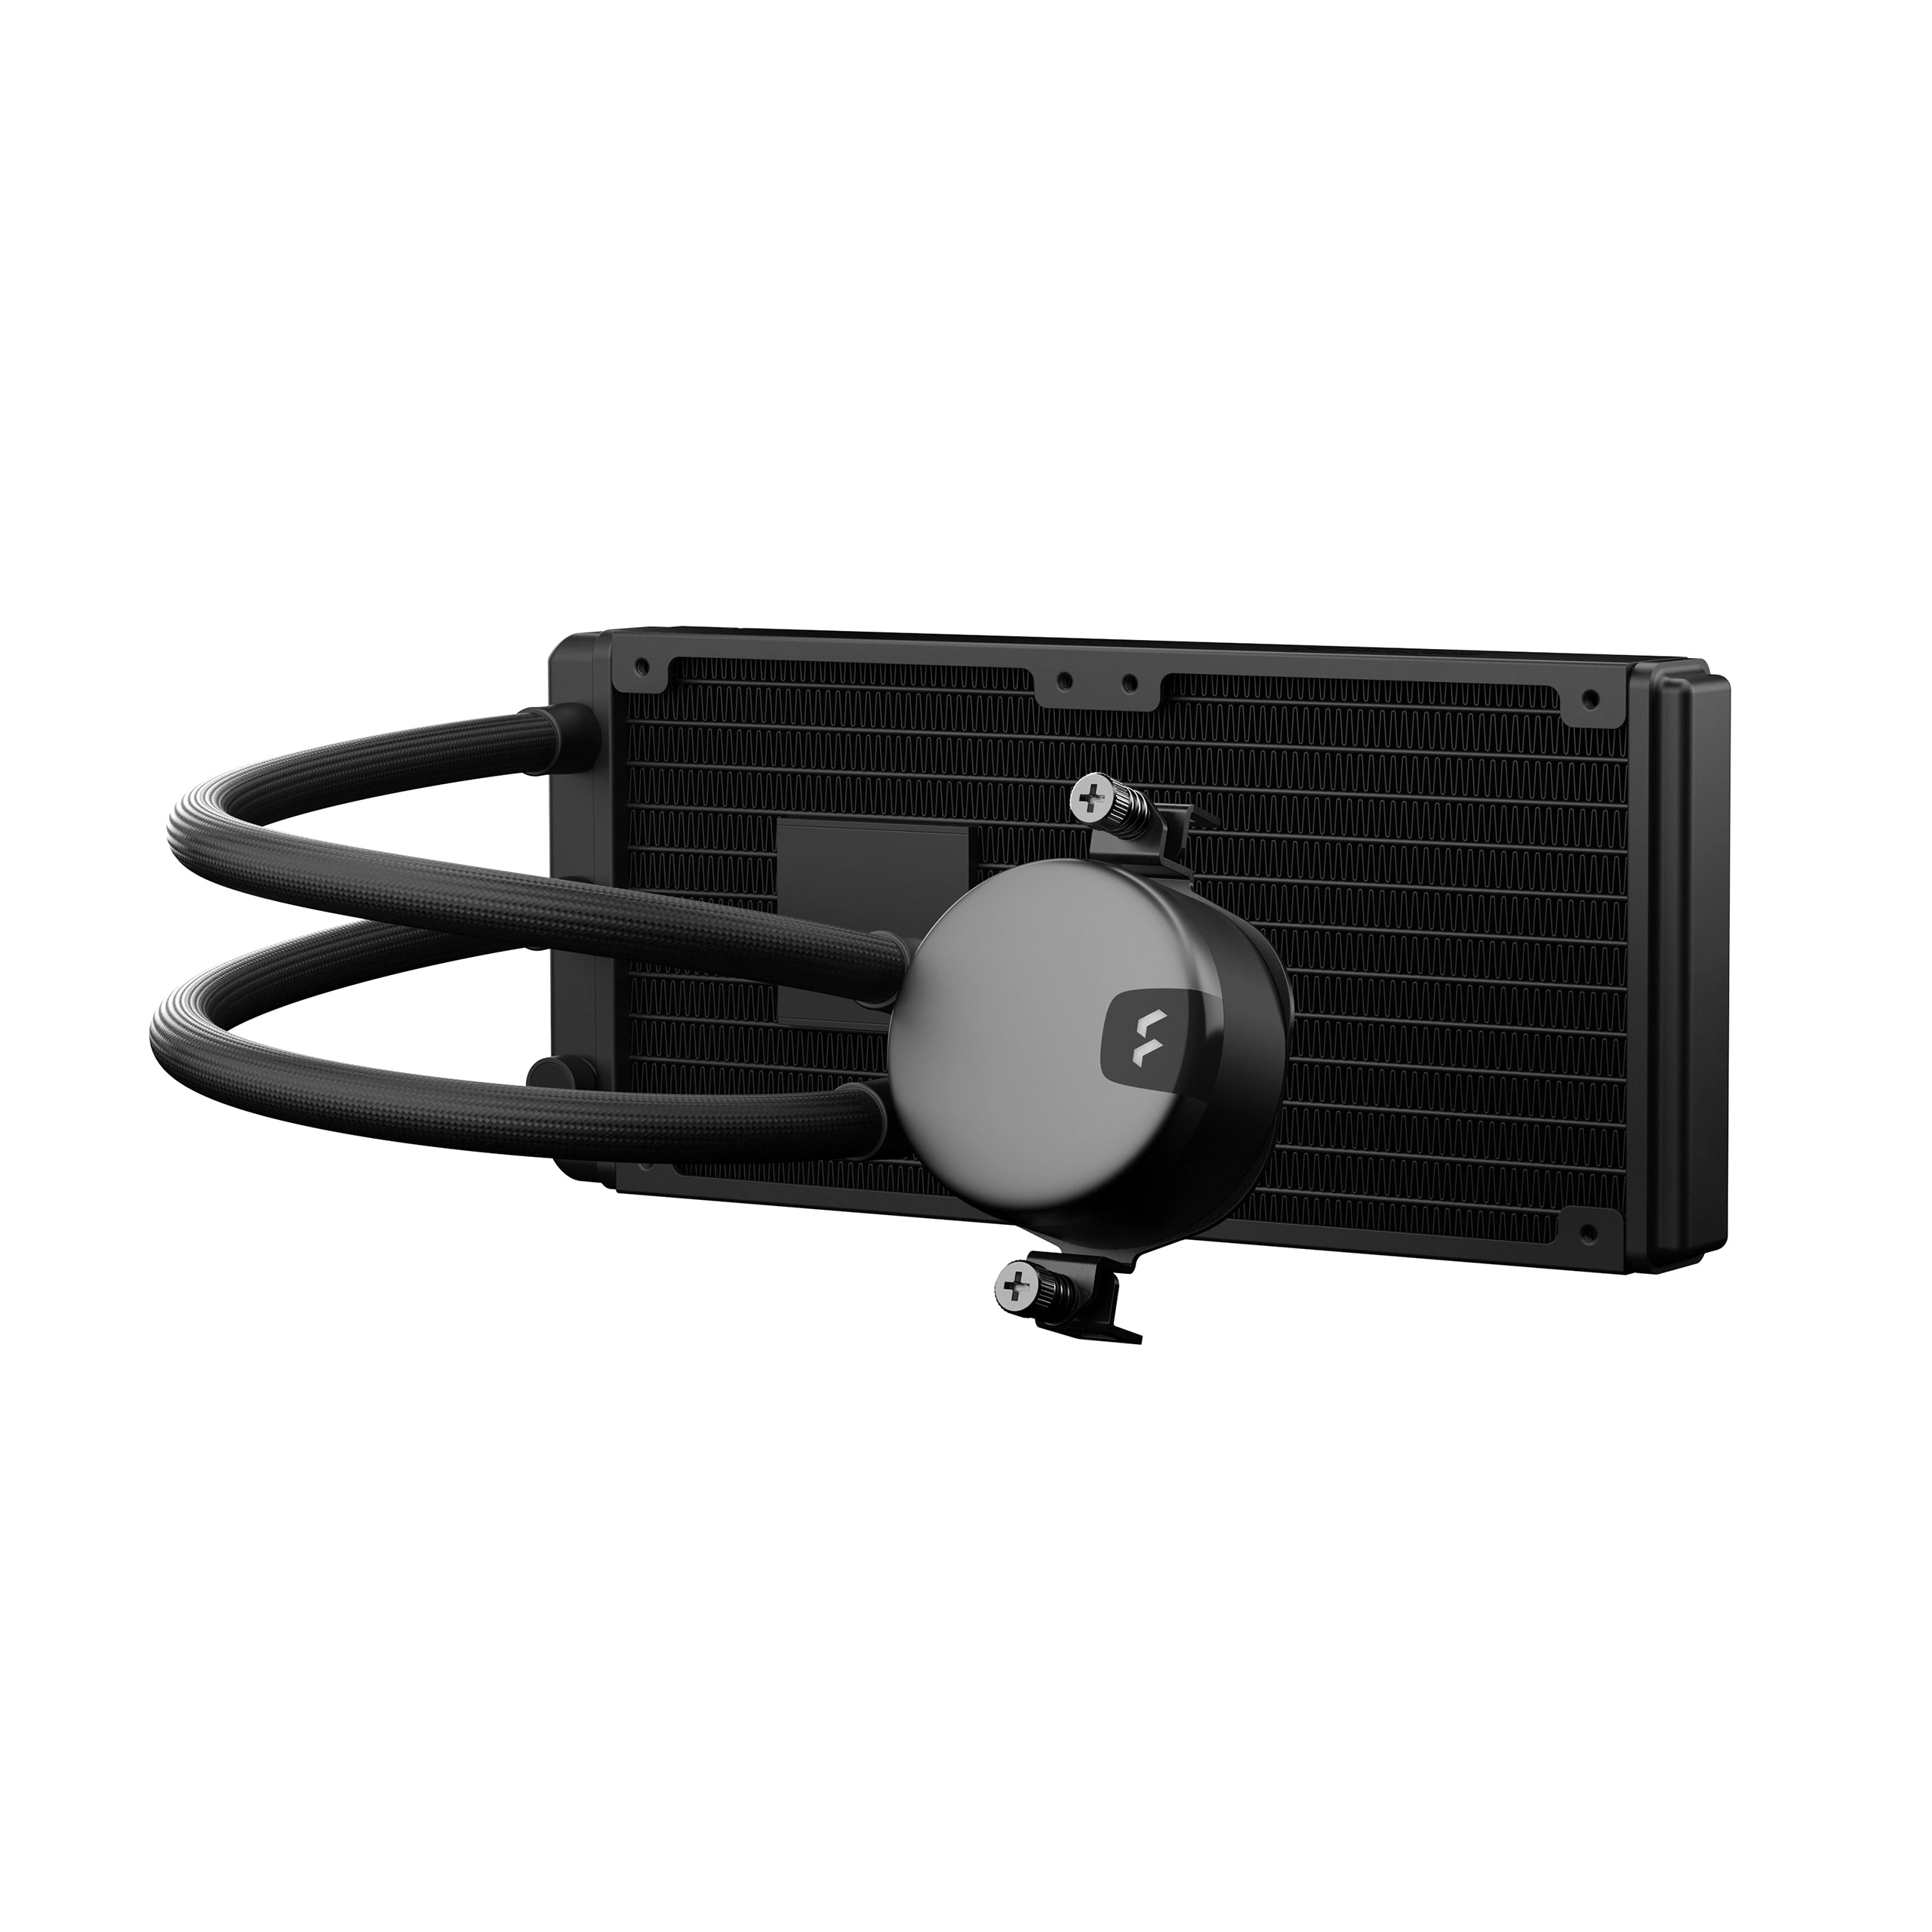 Fractal Design Lumen S28 280mm RGB Water Cooling System